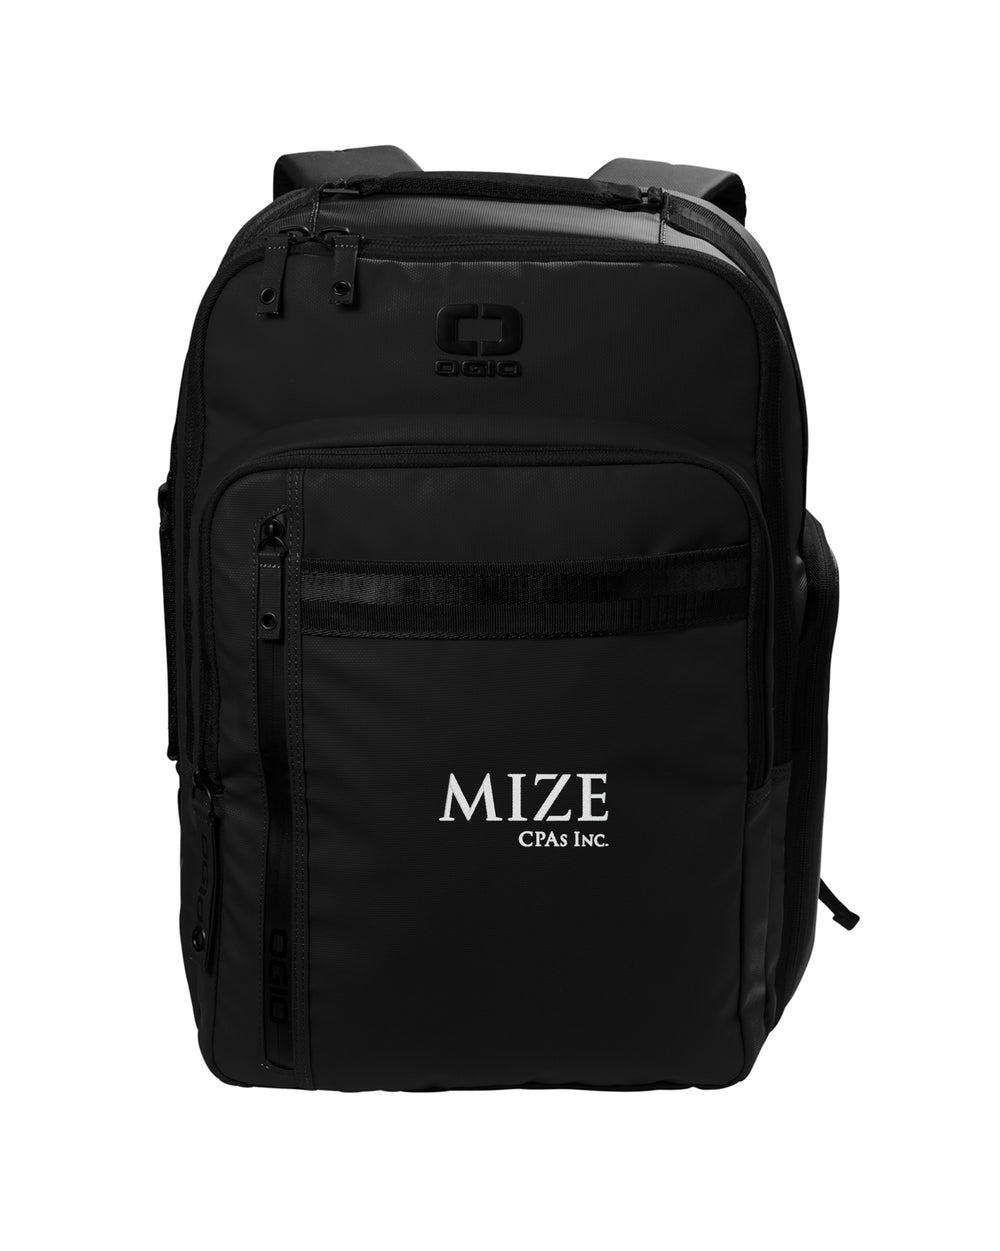 Mize CPAs Inc. - OGIO Commuter XL Pack - 91012